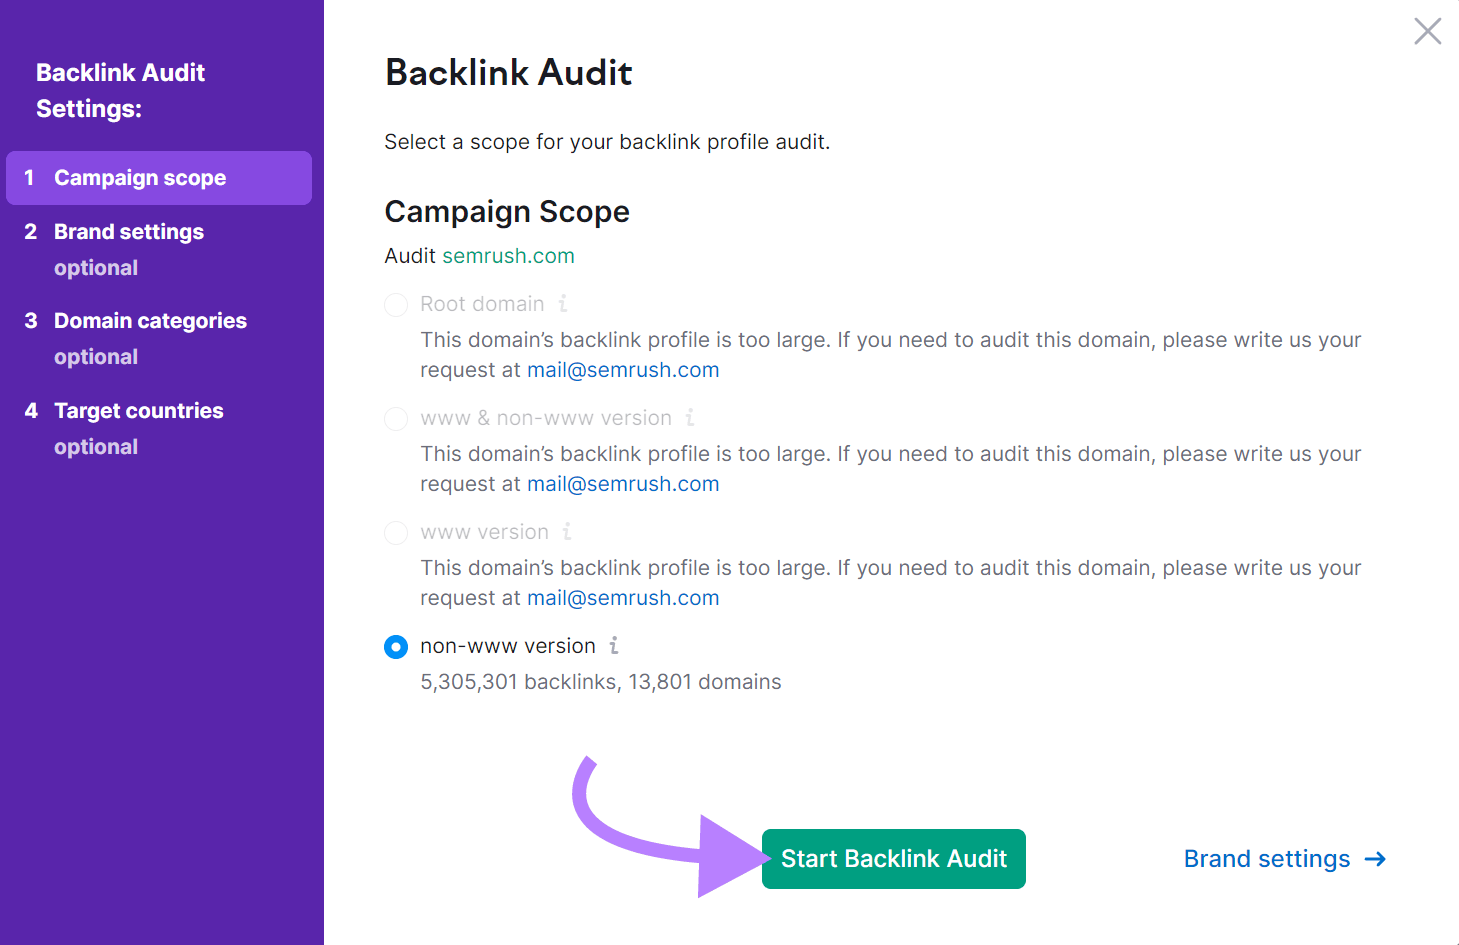 "Start Backlink Audit" button